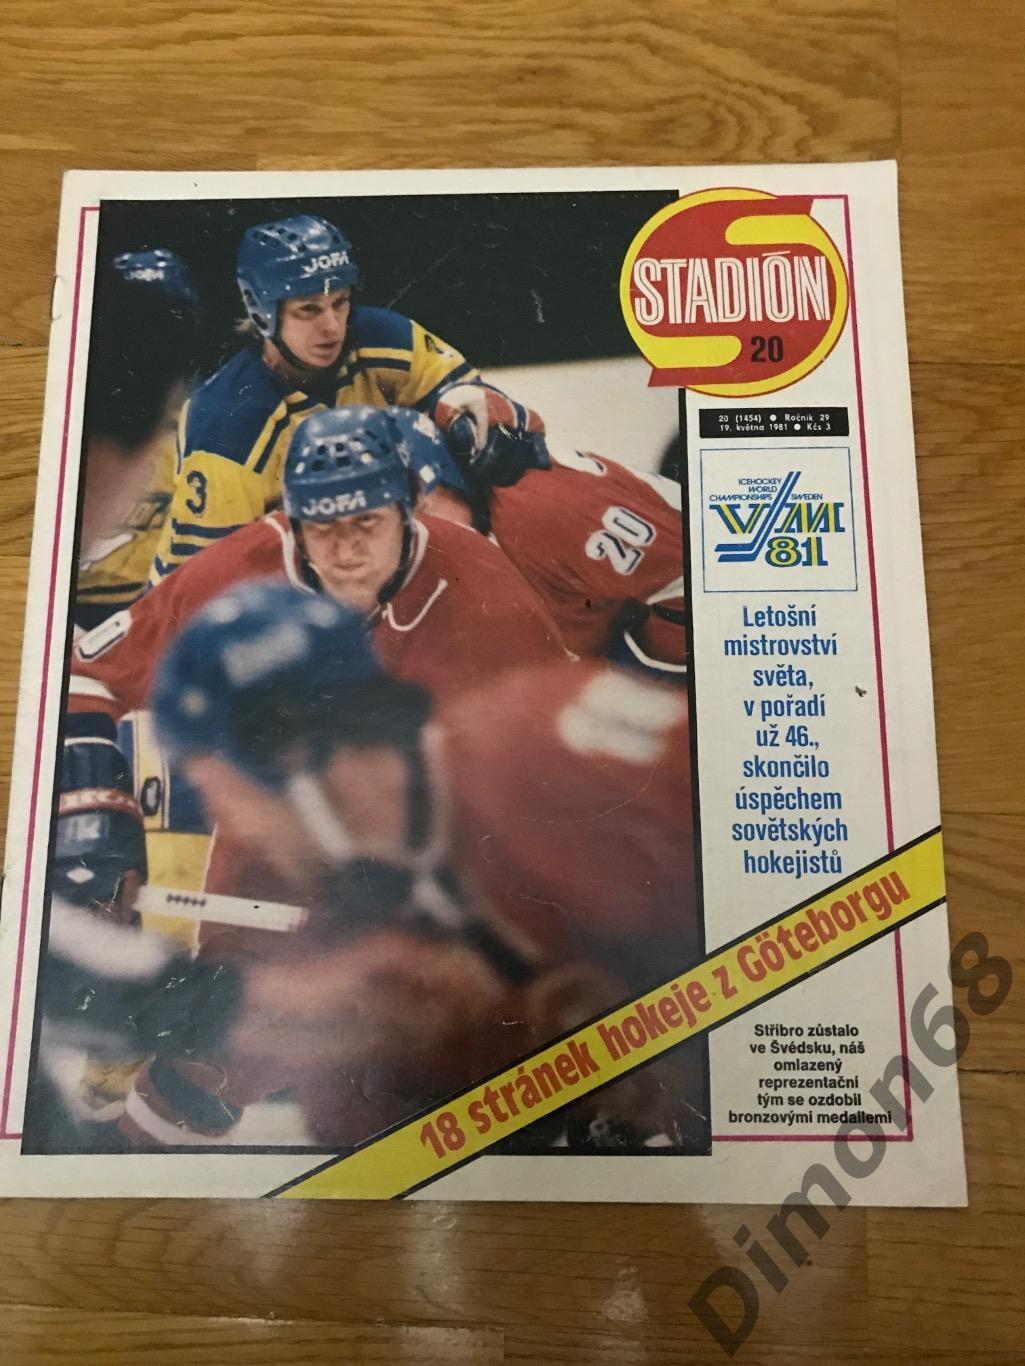 STADION’20 1981г журнал целый в идеальном состоянии